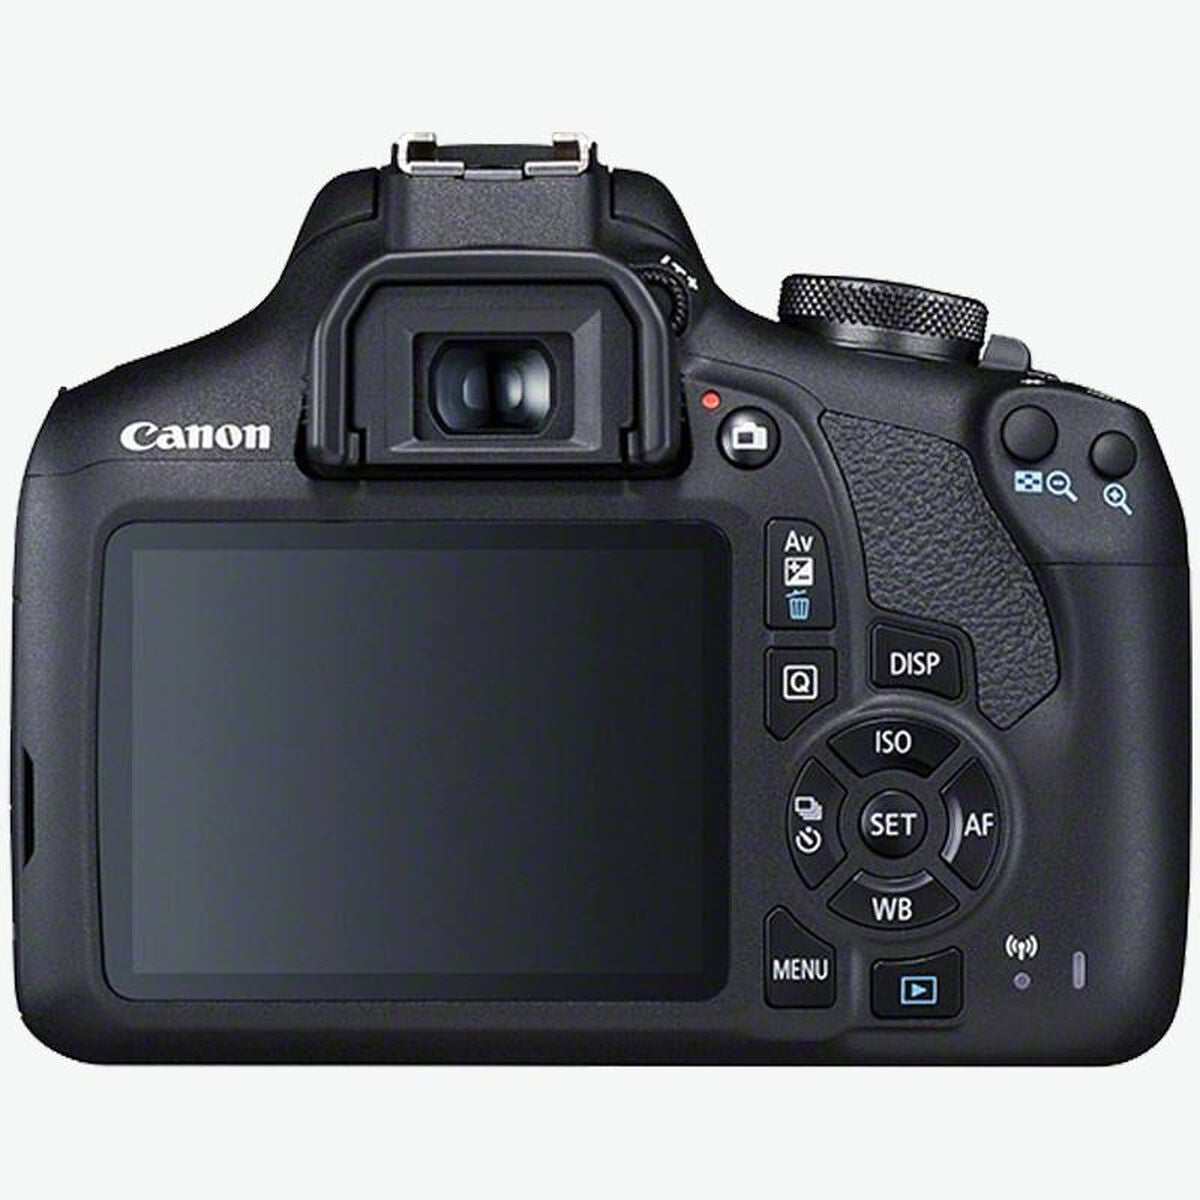 Fotocamera Digitale Canon EOS 2000D